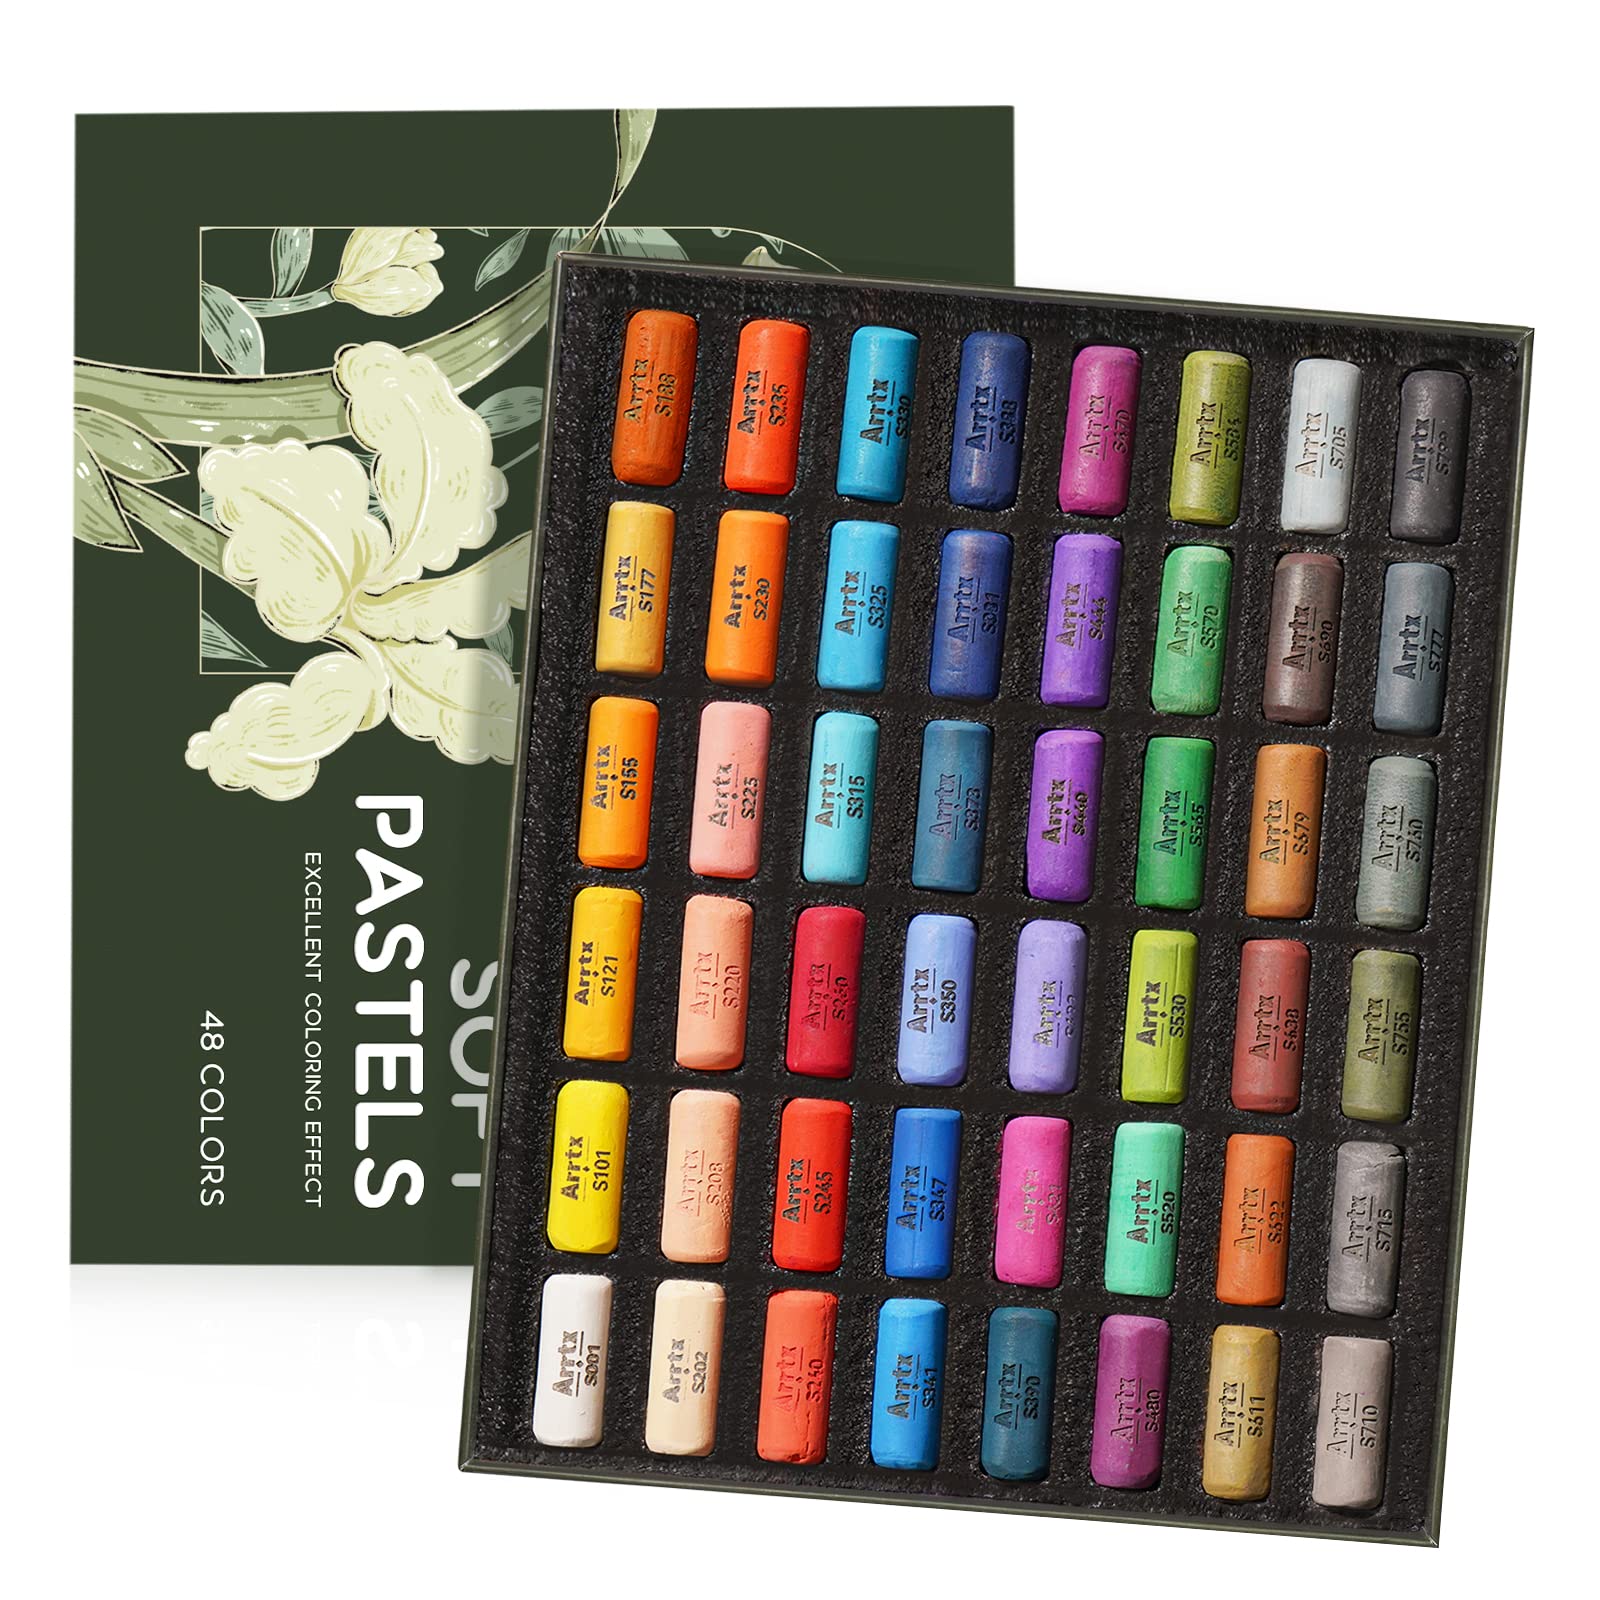 Arrtx Soft Pastels Art Supplies 48 Assorted Colors Chalk Pastels